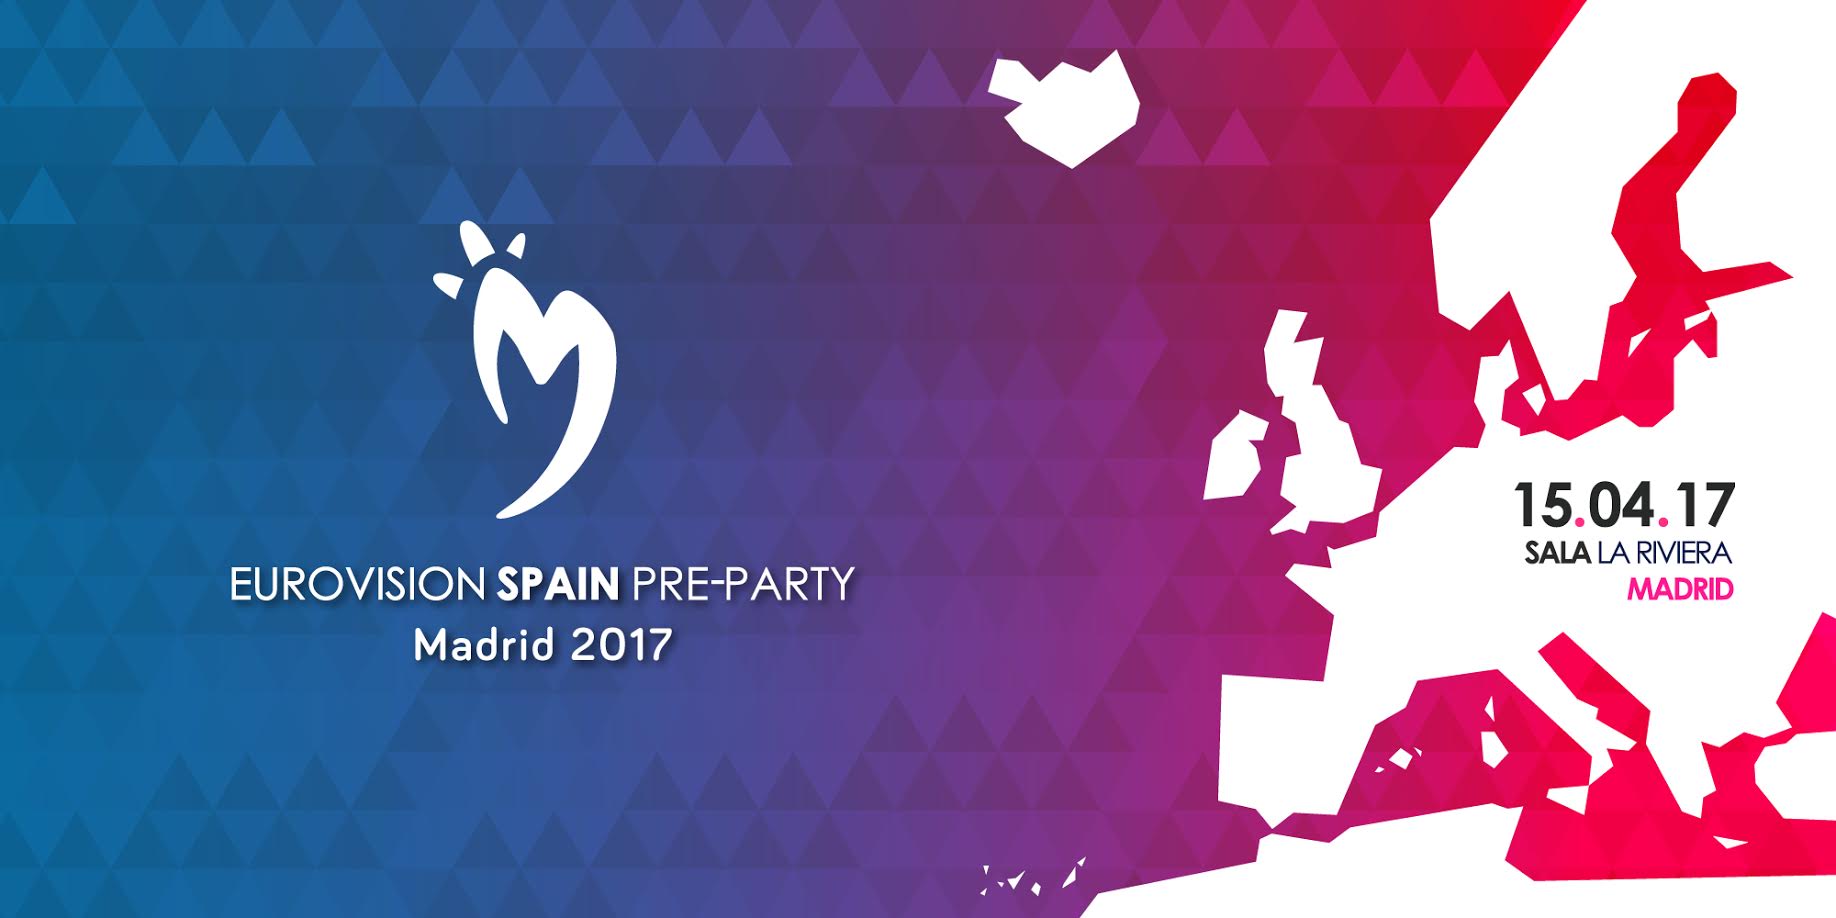 Σήμερα στη Μαδρίτη το Eurovision pre-party, το τελευταίο promo event!